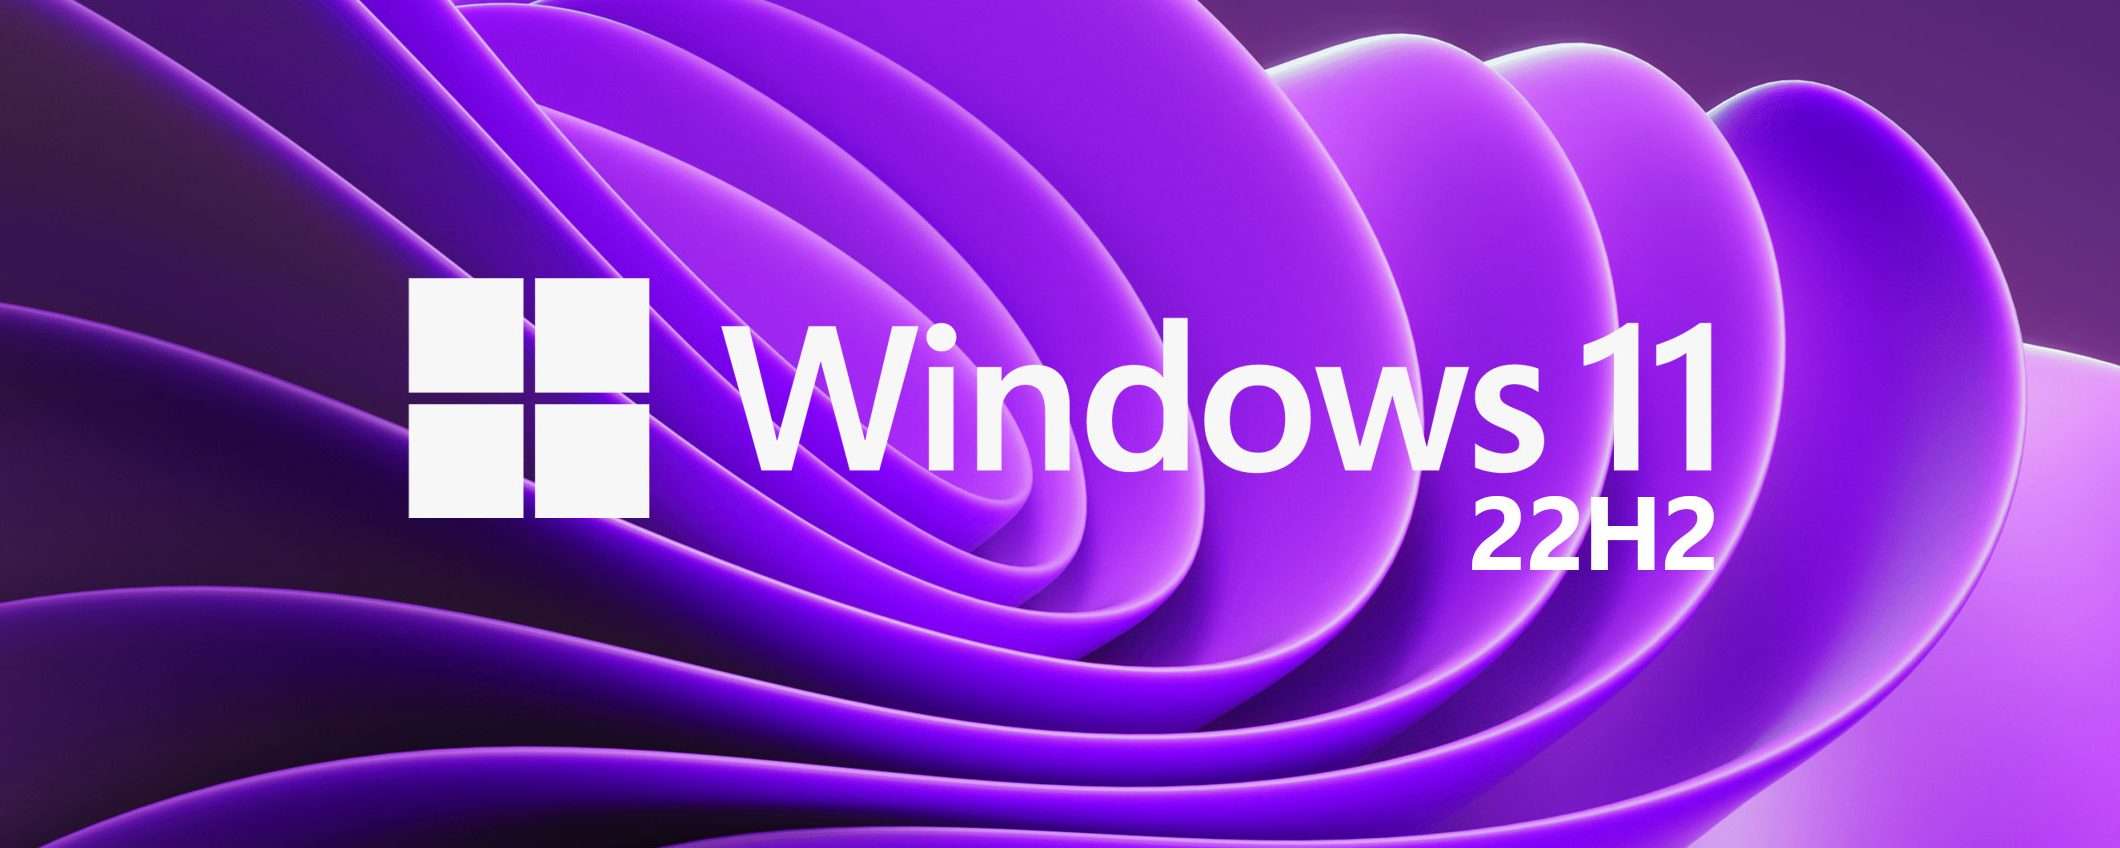 Windows 11: indicatore VPN e altre novità in arrivo